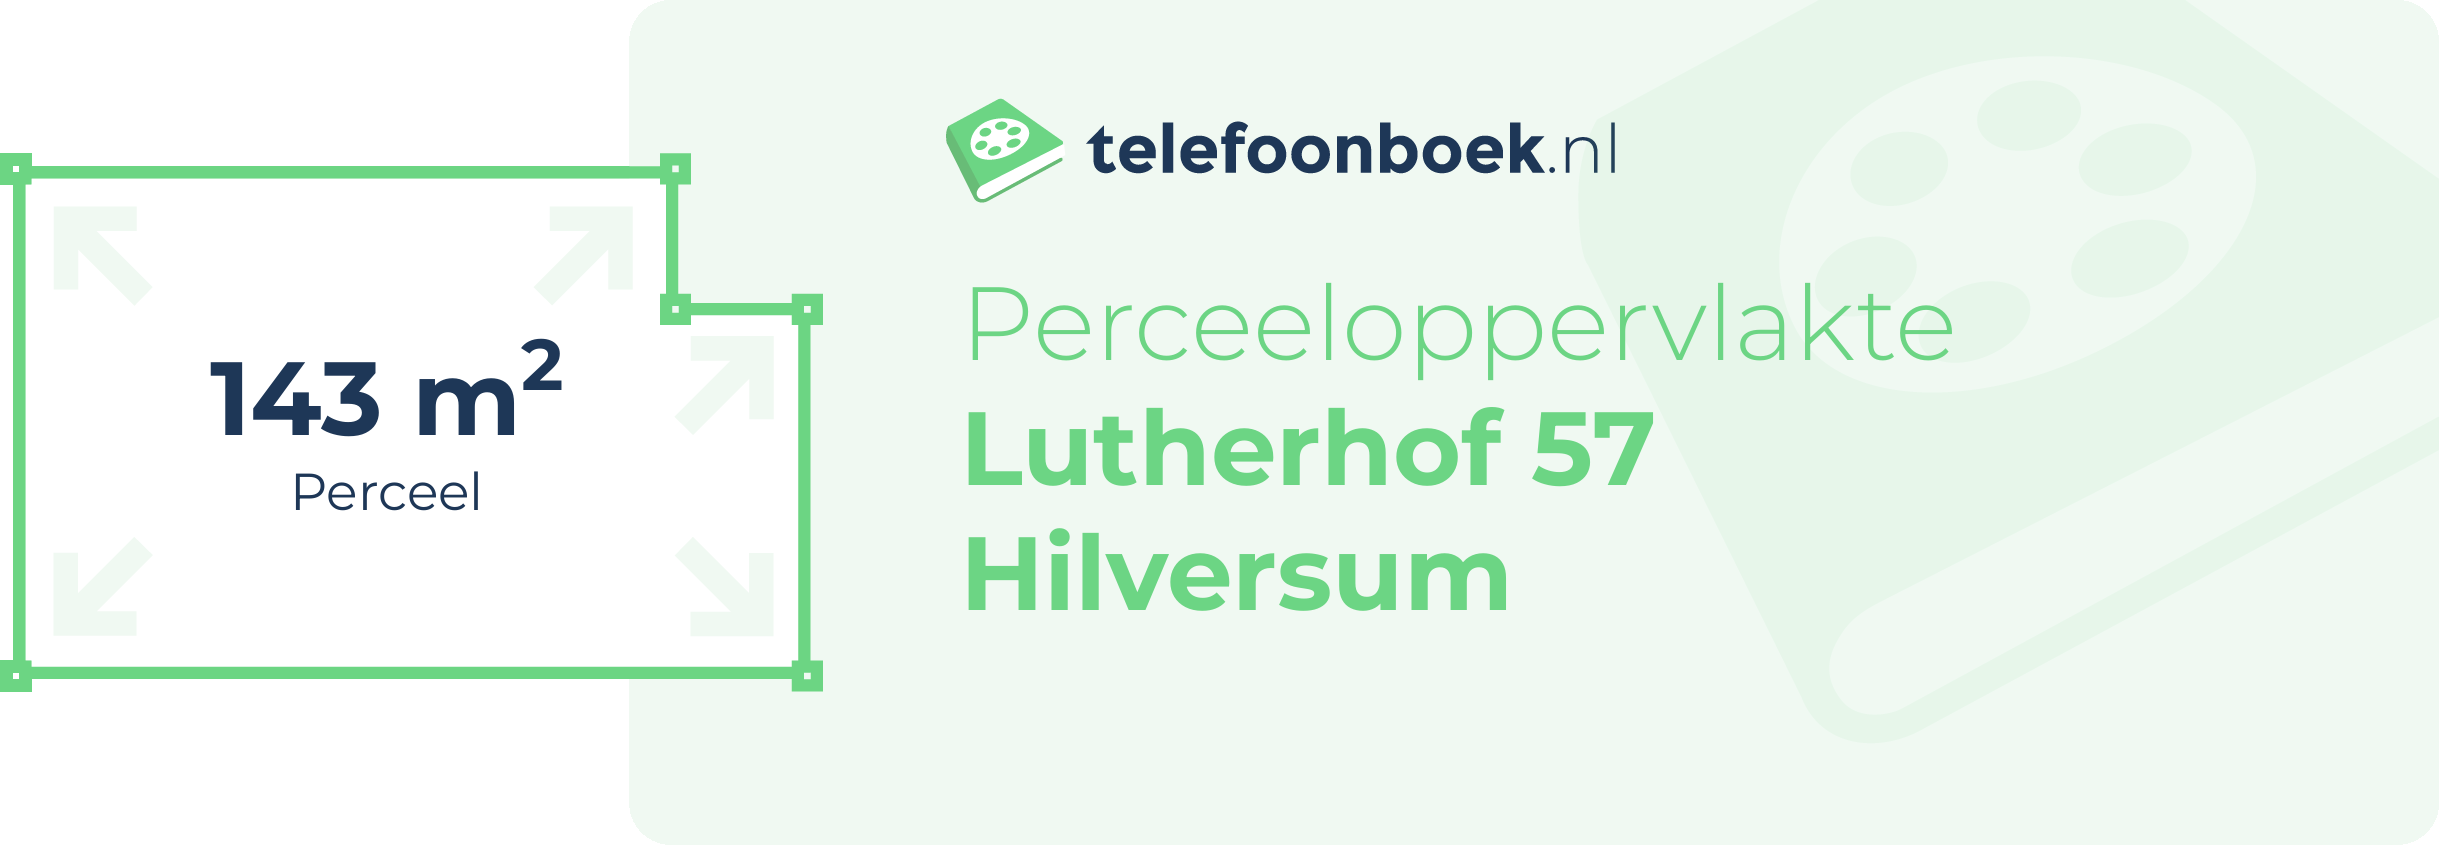 Perceeloppervlakte Lutherhof 57 Hilversum